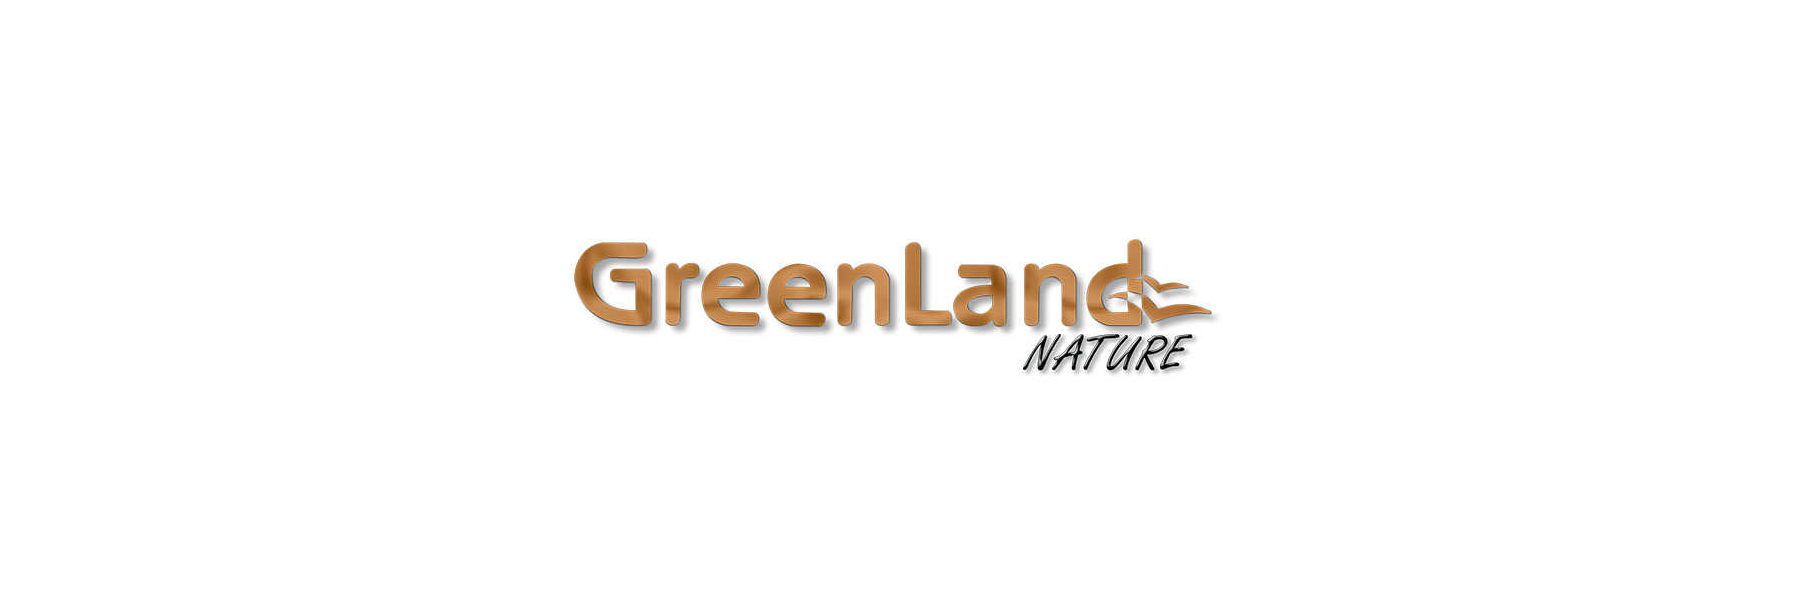 Lederwaren Online - gegerbt Nature Gel natürlich Geldboerse Greenland